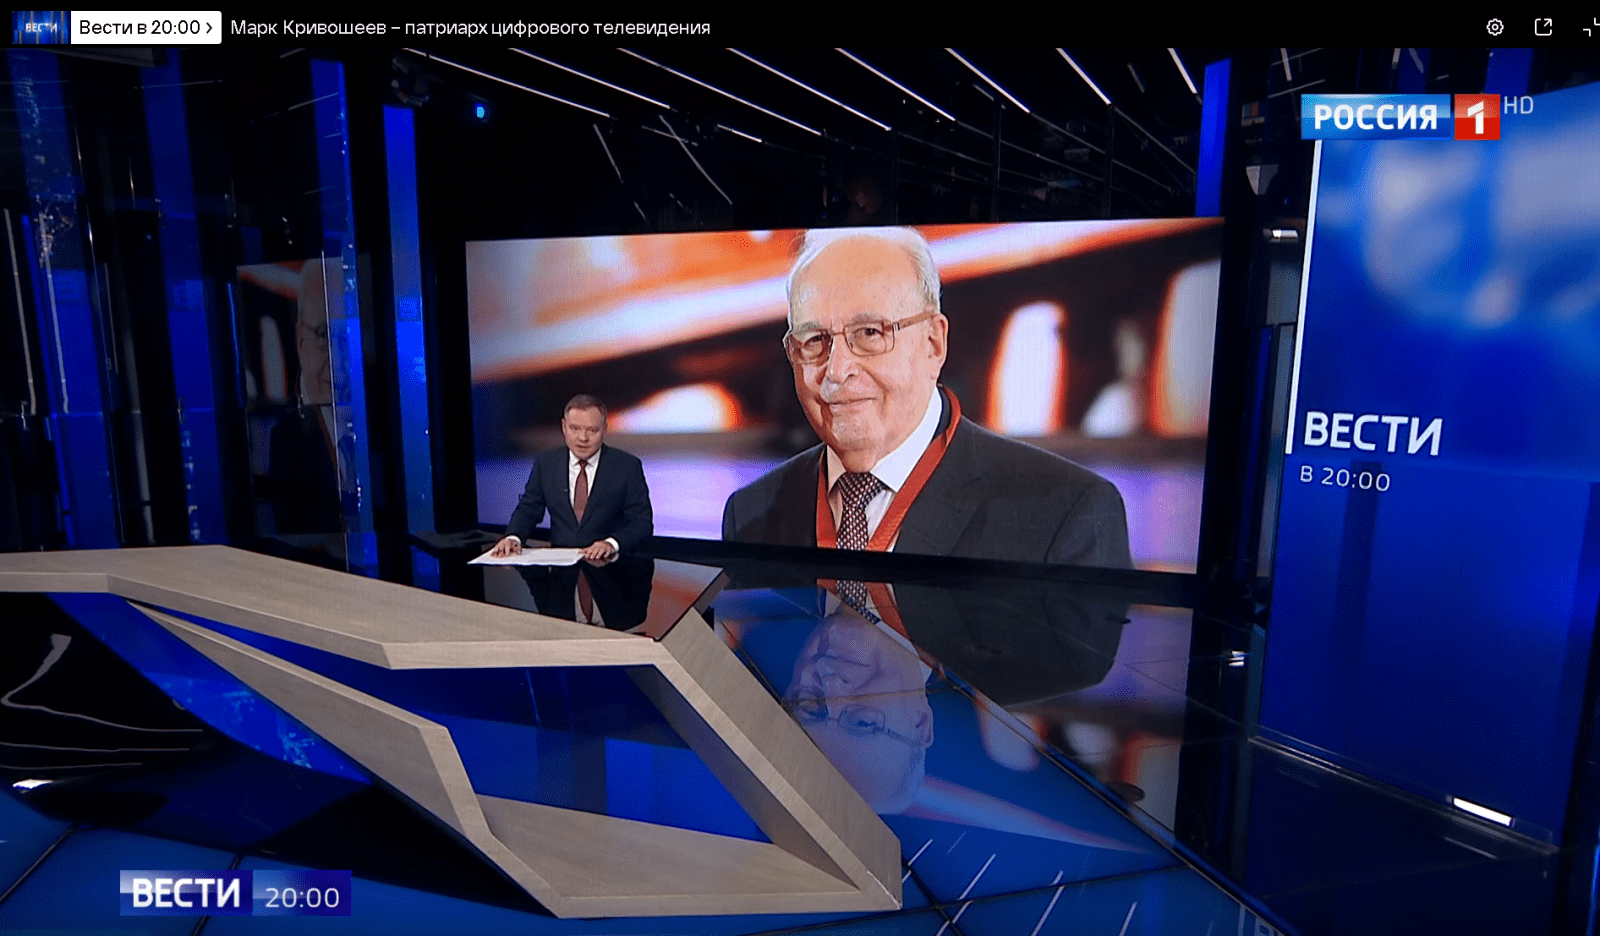 Телеканалы показали репортажи, посвящённые Марку Кривошееву